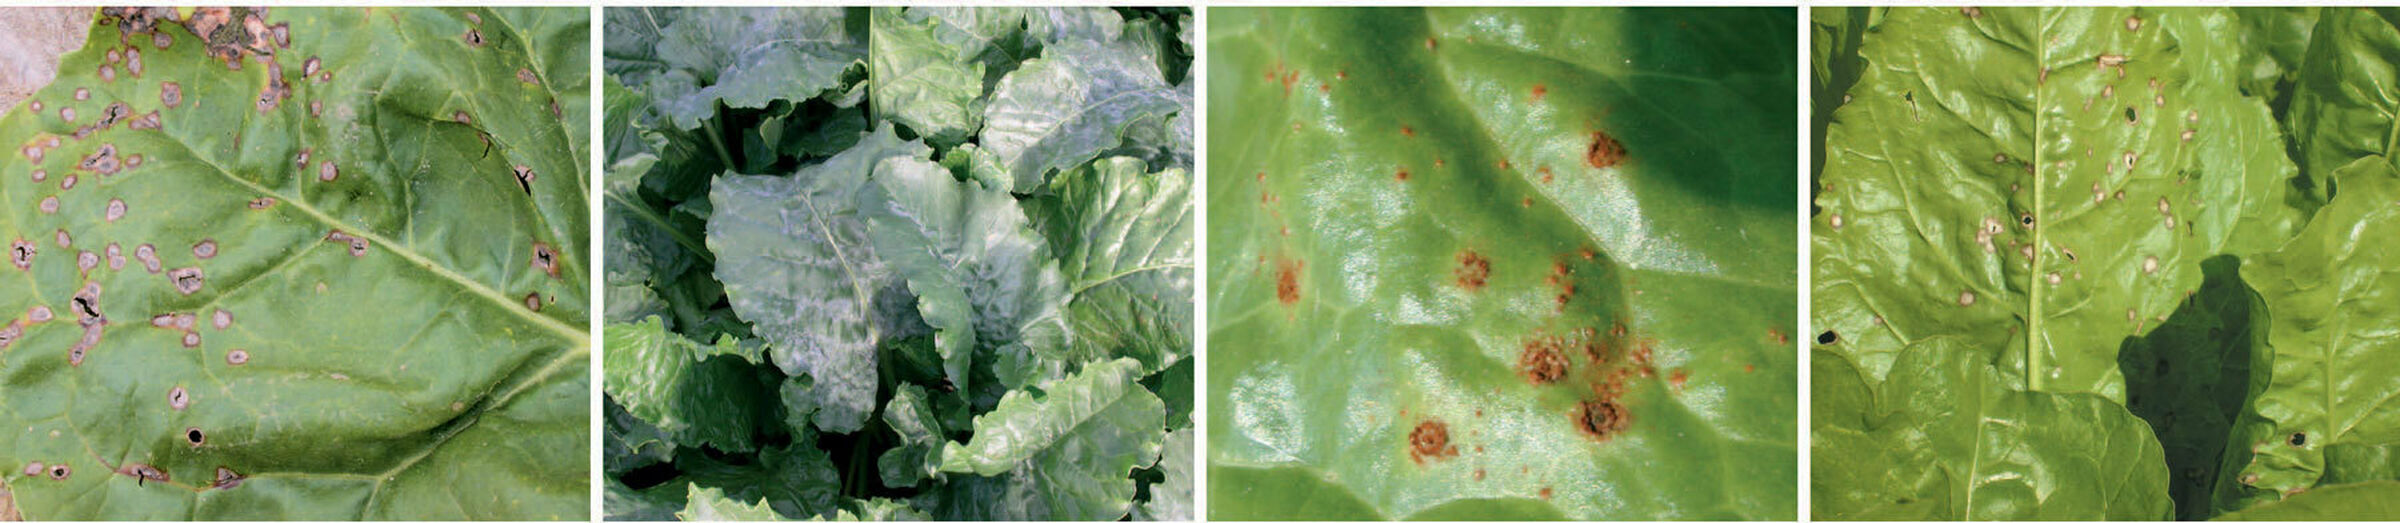 Sesvanderhave sugar beet diseases leaf diseases banner